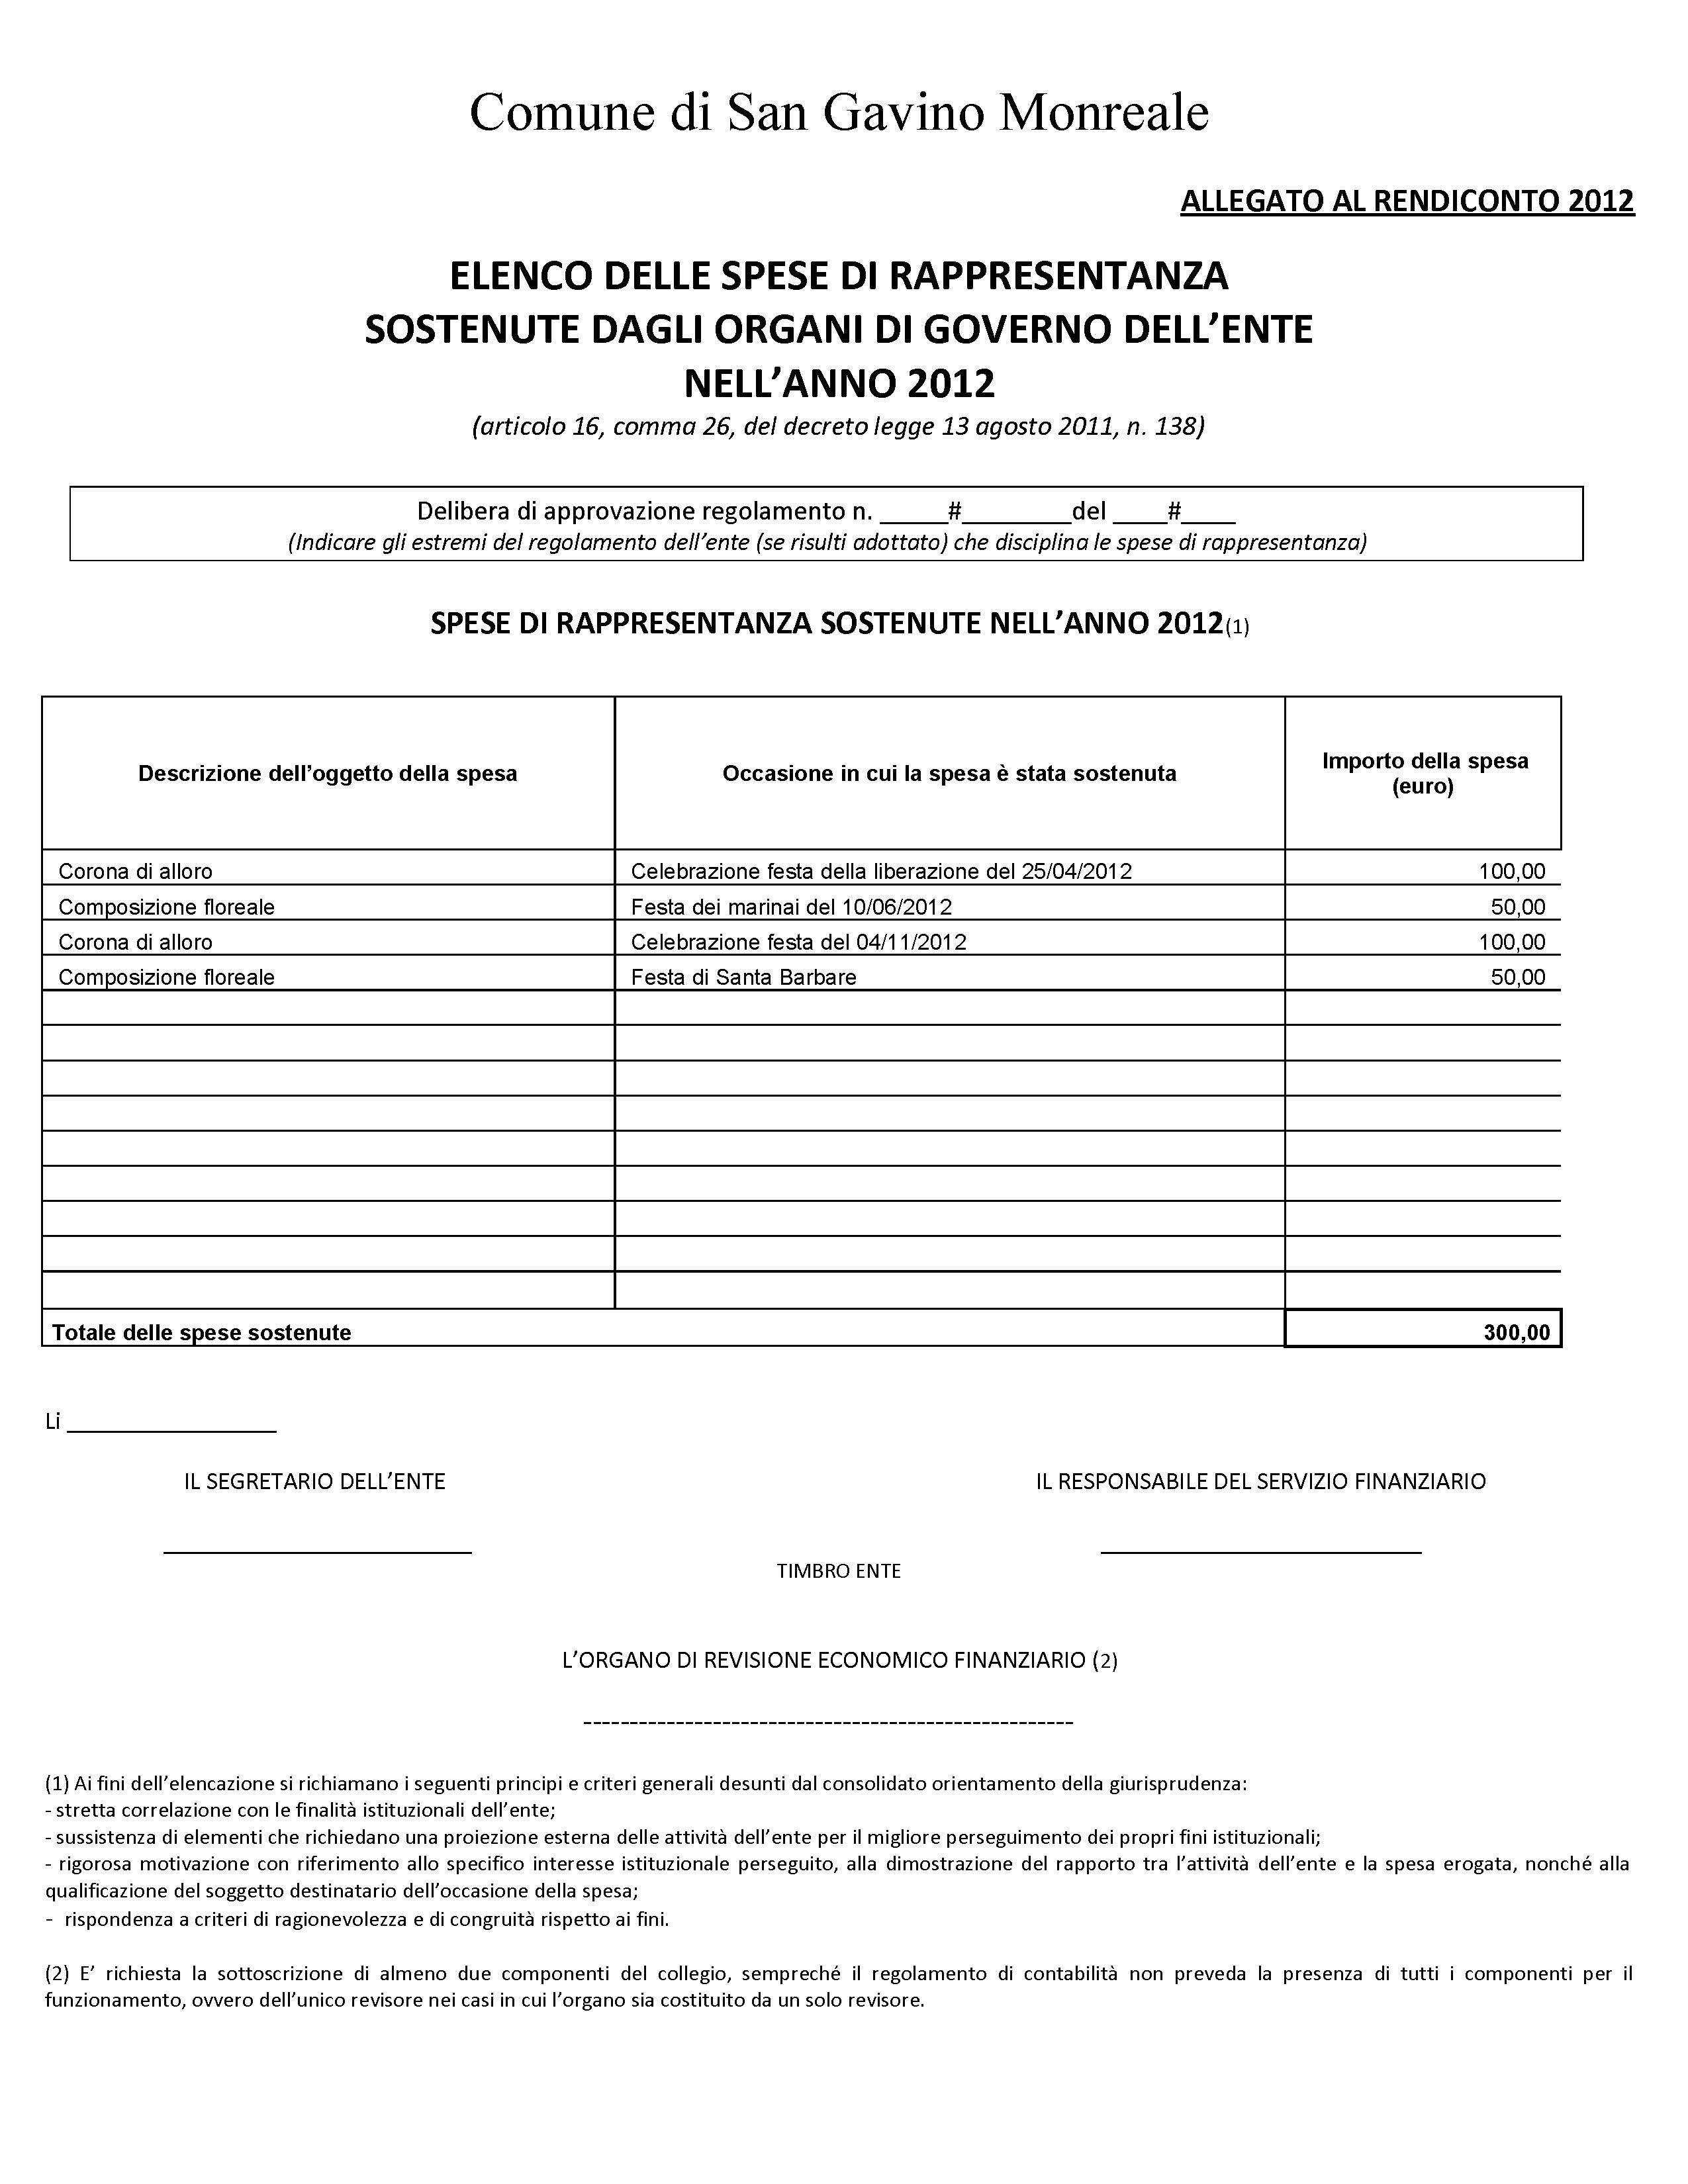 Spese di rappresentanza sostenute dal Comune di San Gavino Monreale nell'anno 2012